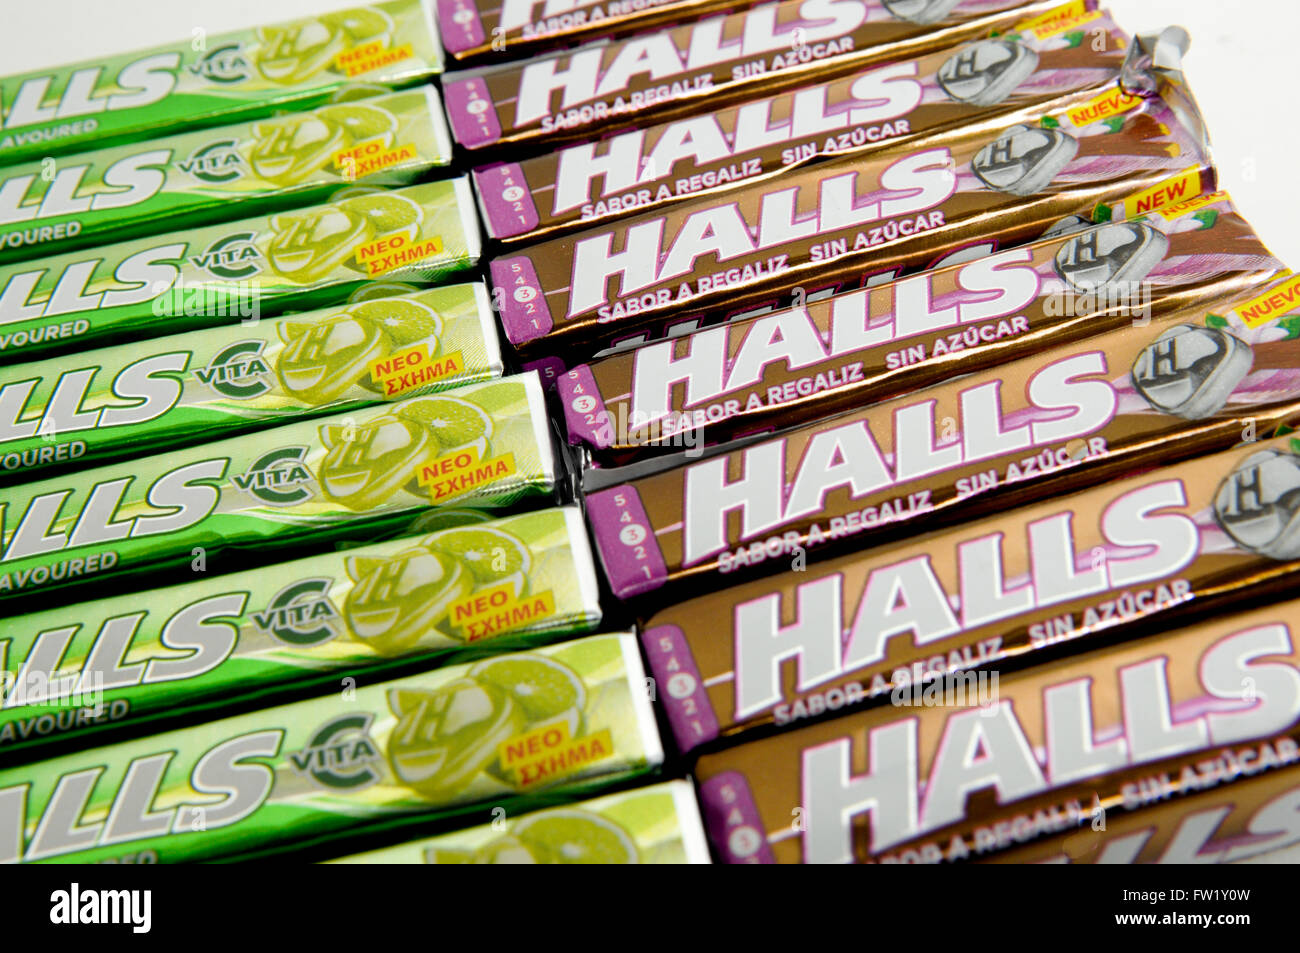 Halls mentolado tos drop,una marca hecha por Mondelēz International, Cadbury. Foto de stock